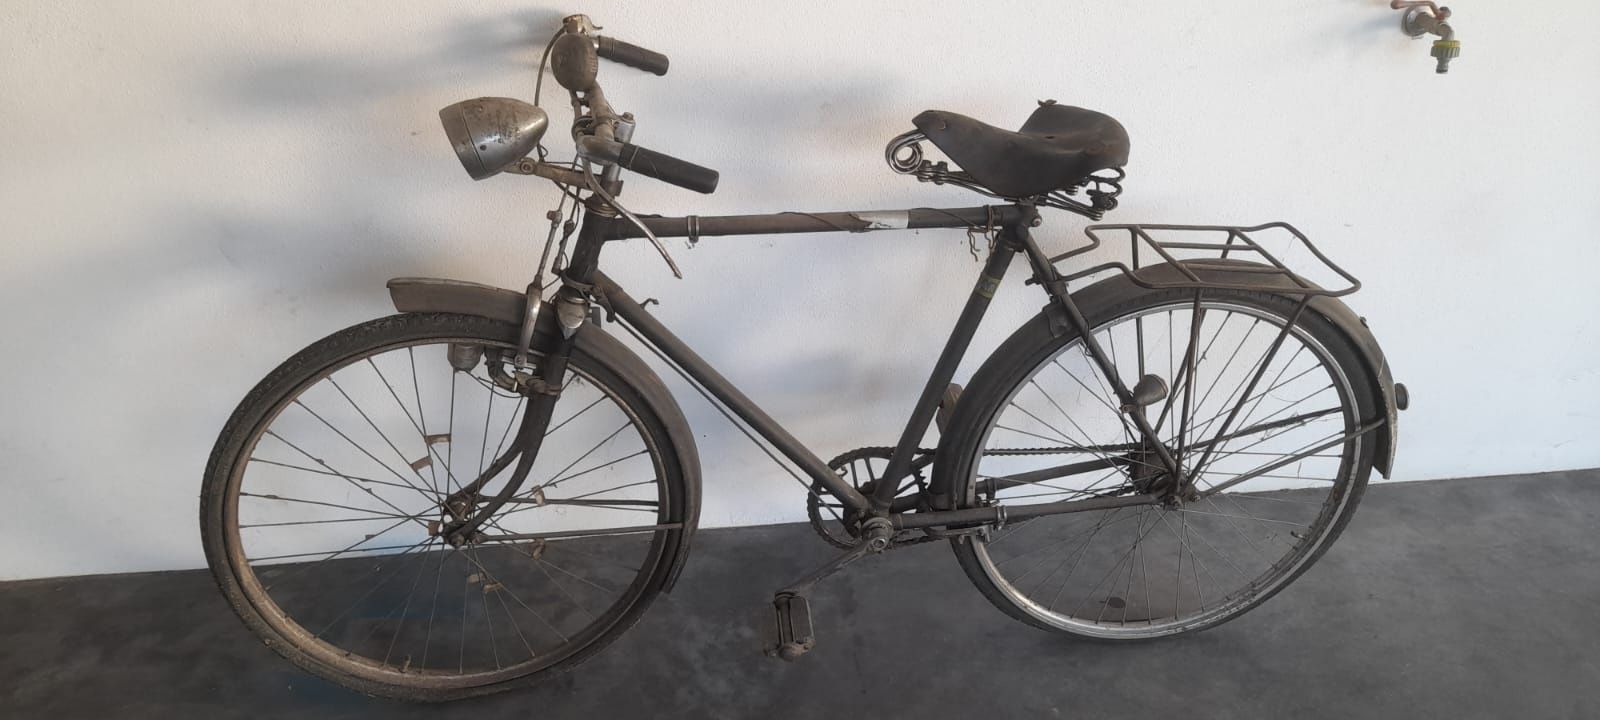 Bicicleta Pasteleira antiga